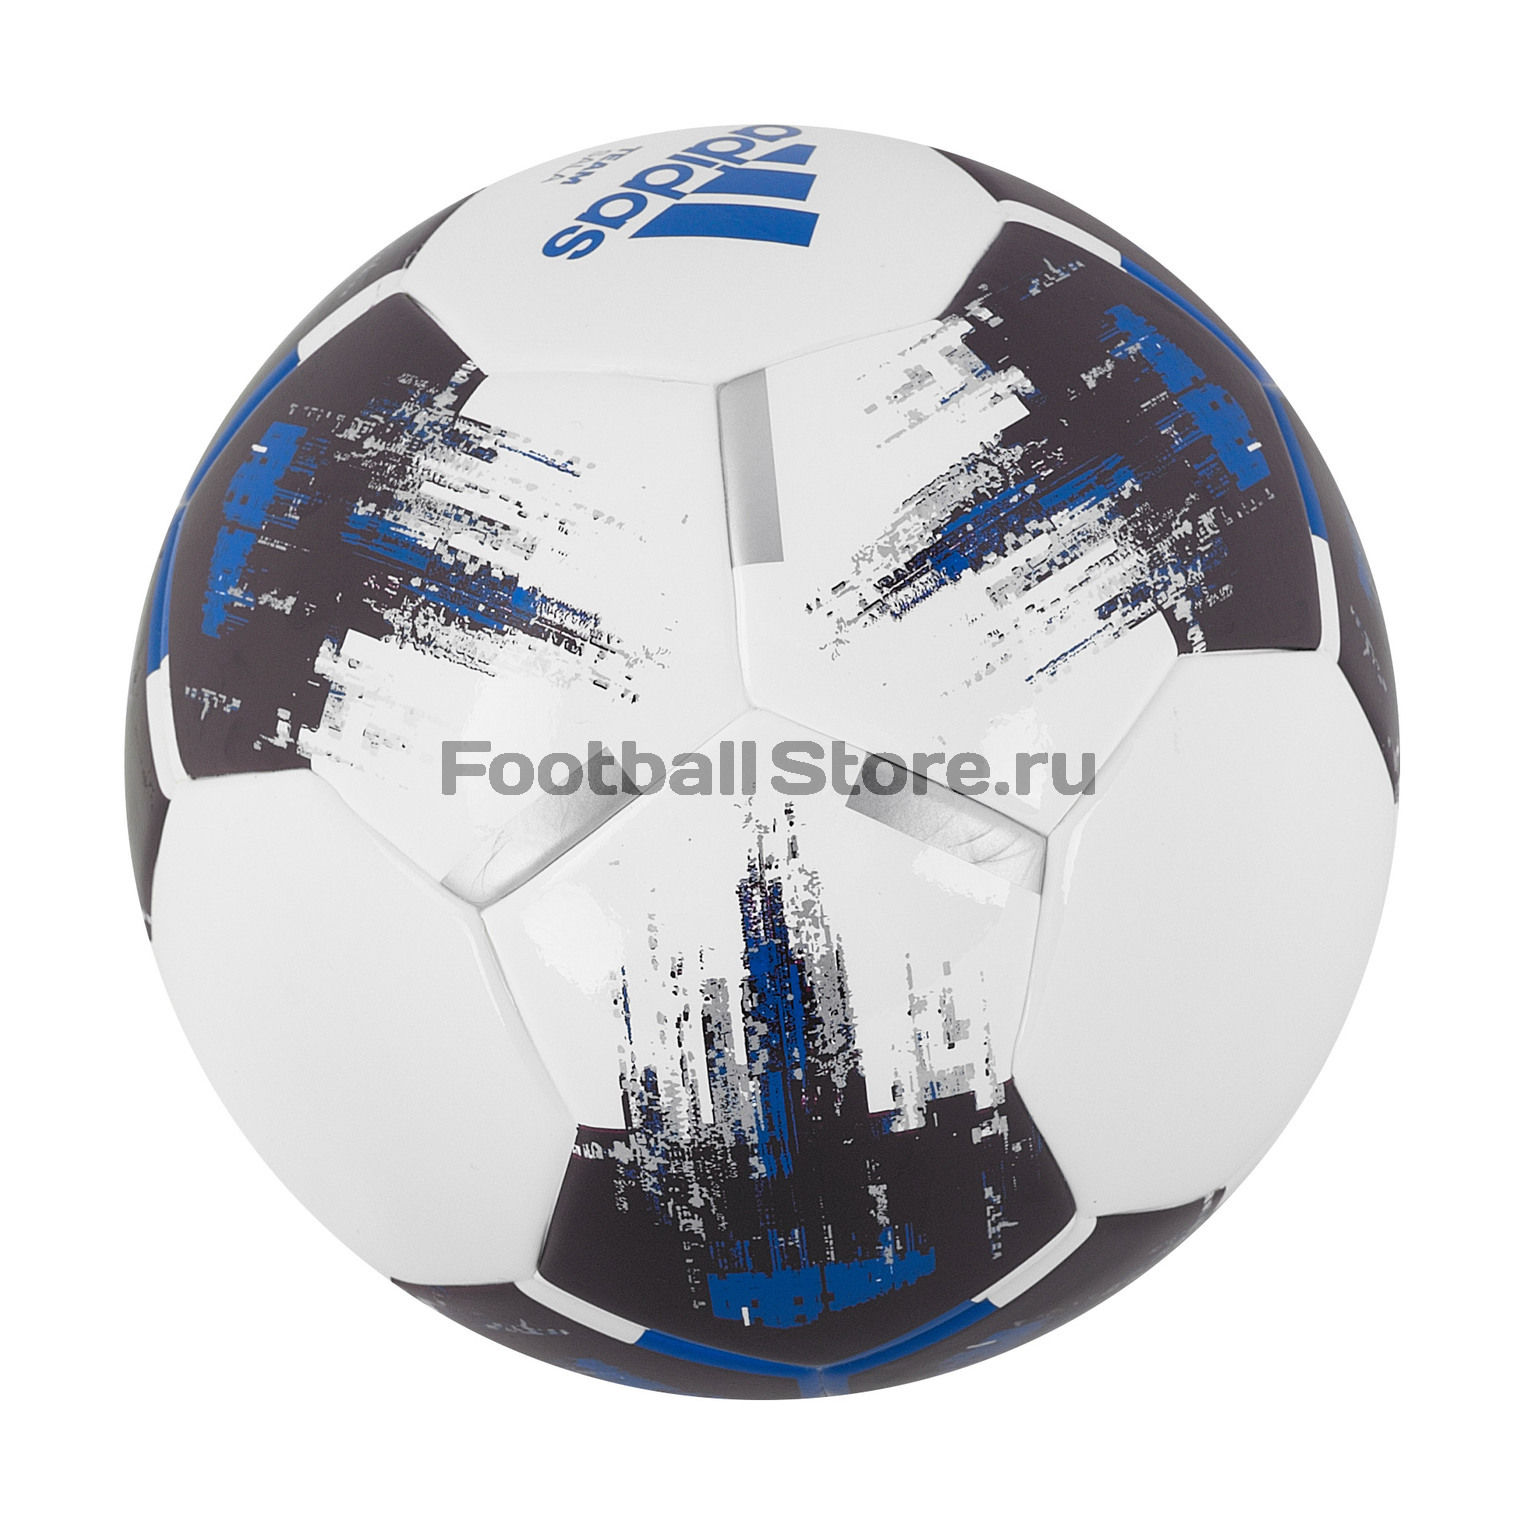 Футзальный мяч Adidas Team Sala CZ2231